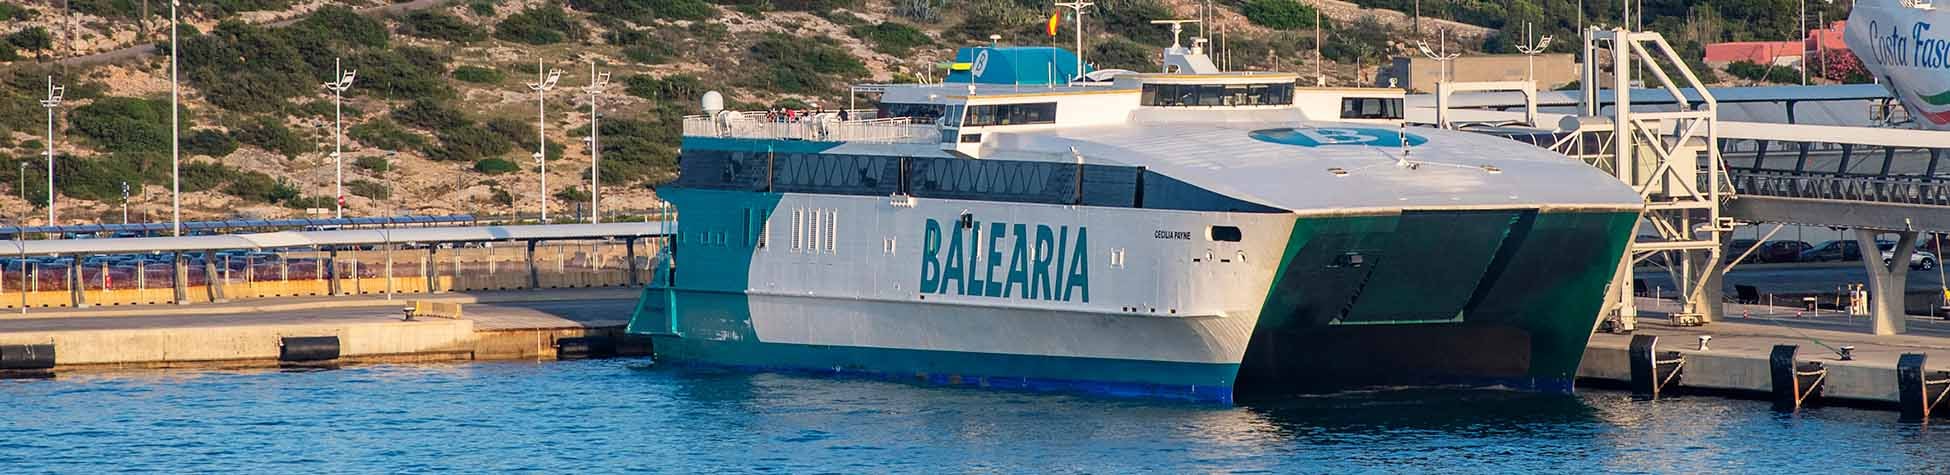 Image ressource du port de destination Majorque (Alcudia) pour l'itinéraire du ferry Barcelone - Majorque (Alcudia)